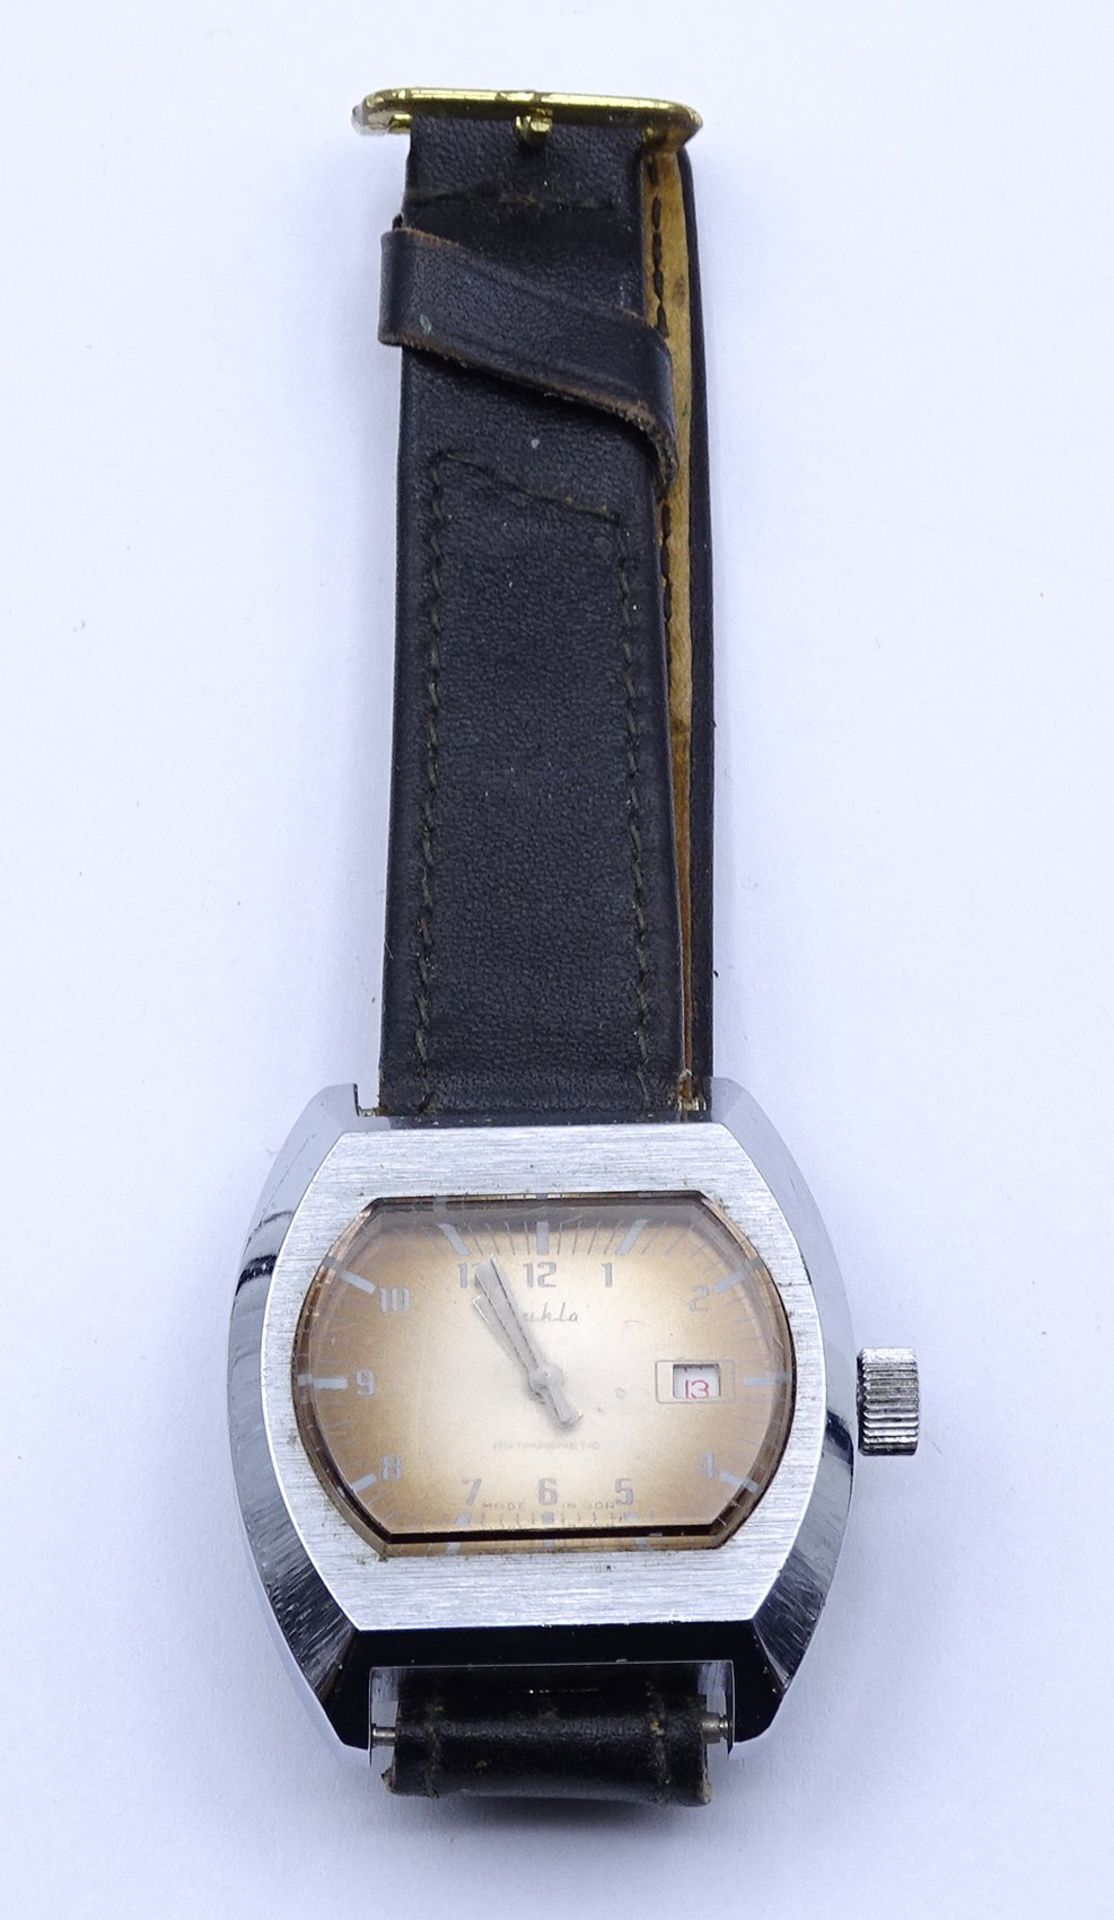 Herren Armbanduhr "Ruhla", Gehäuse 36,1x33,5mm, mechanisch, Werk läuft, Glas stark zerkratzt - Image 4 of 4